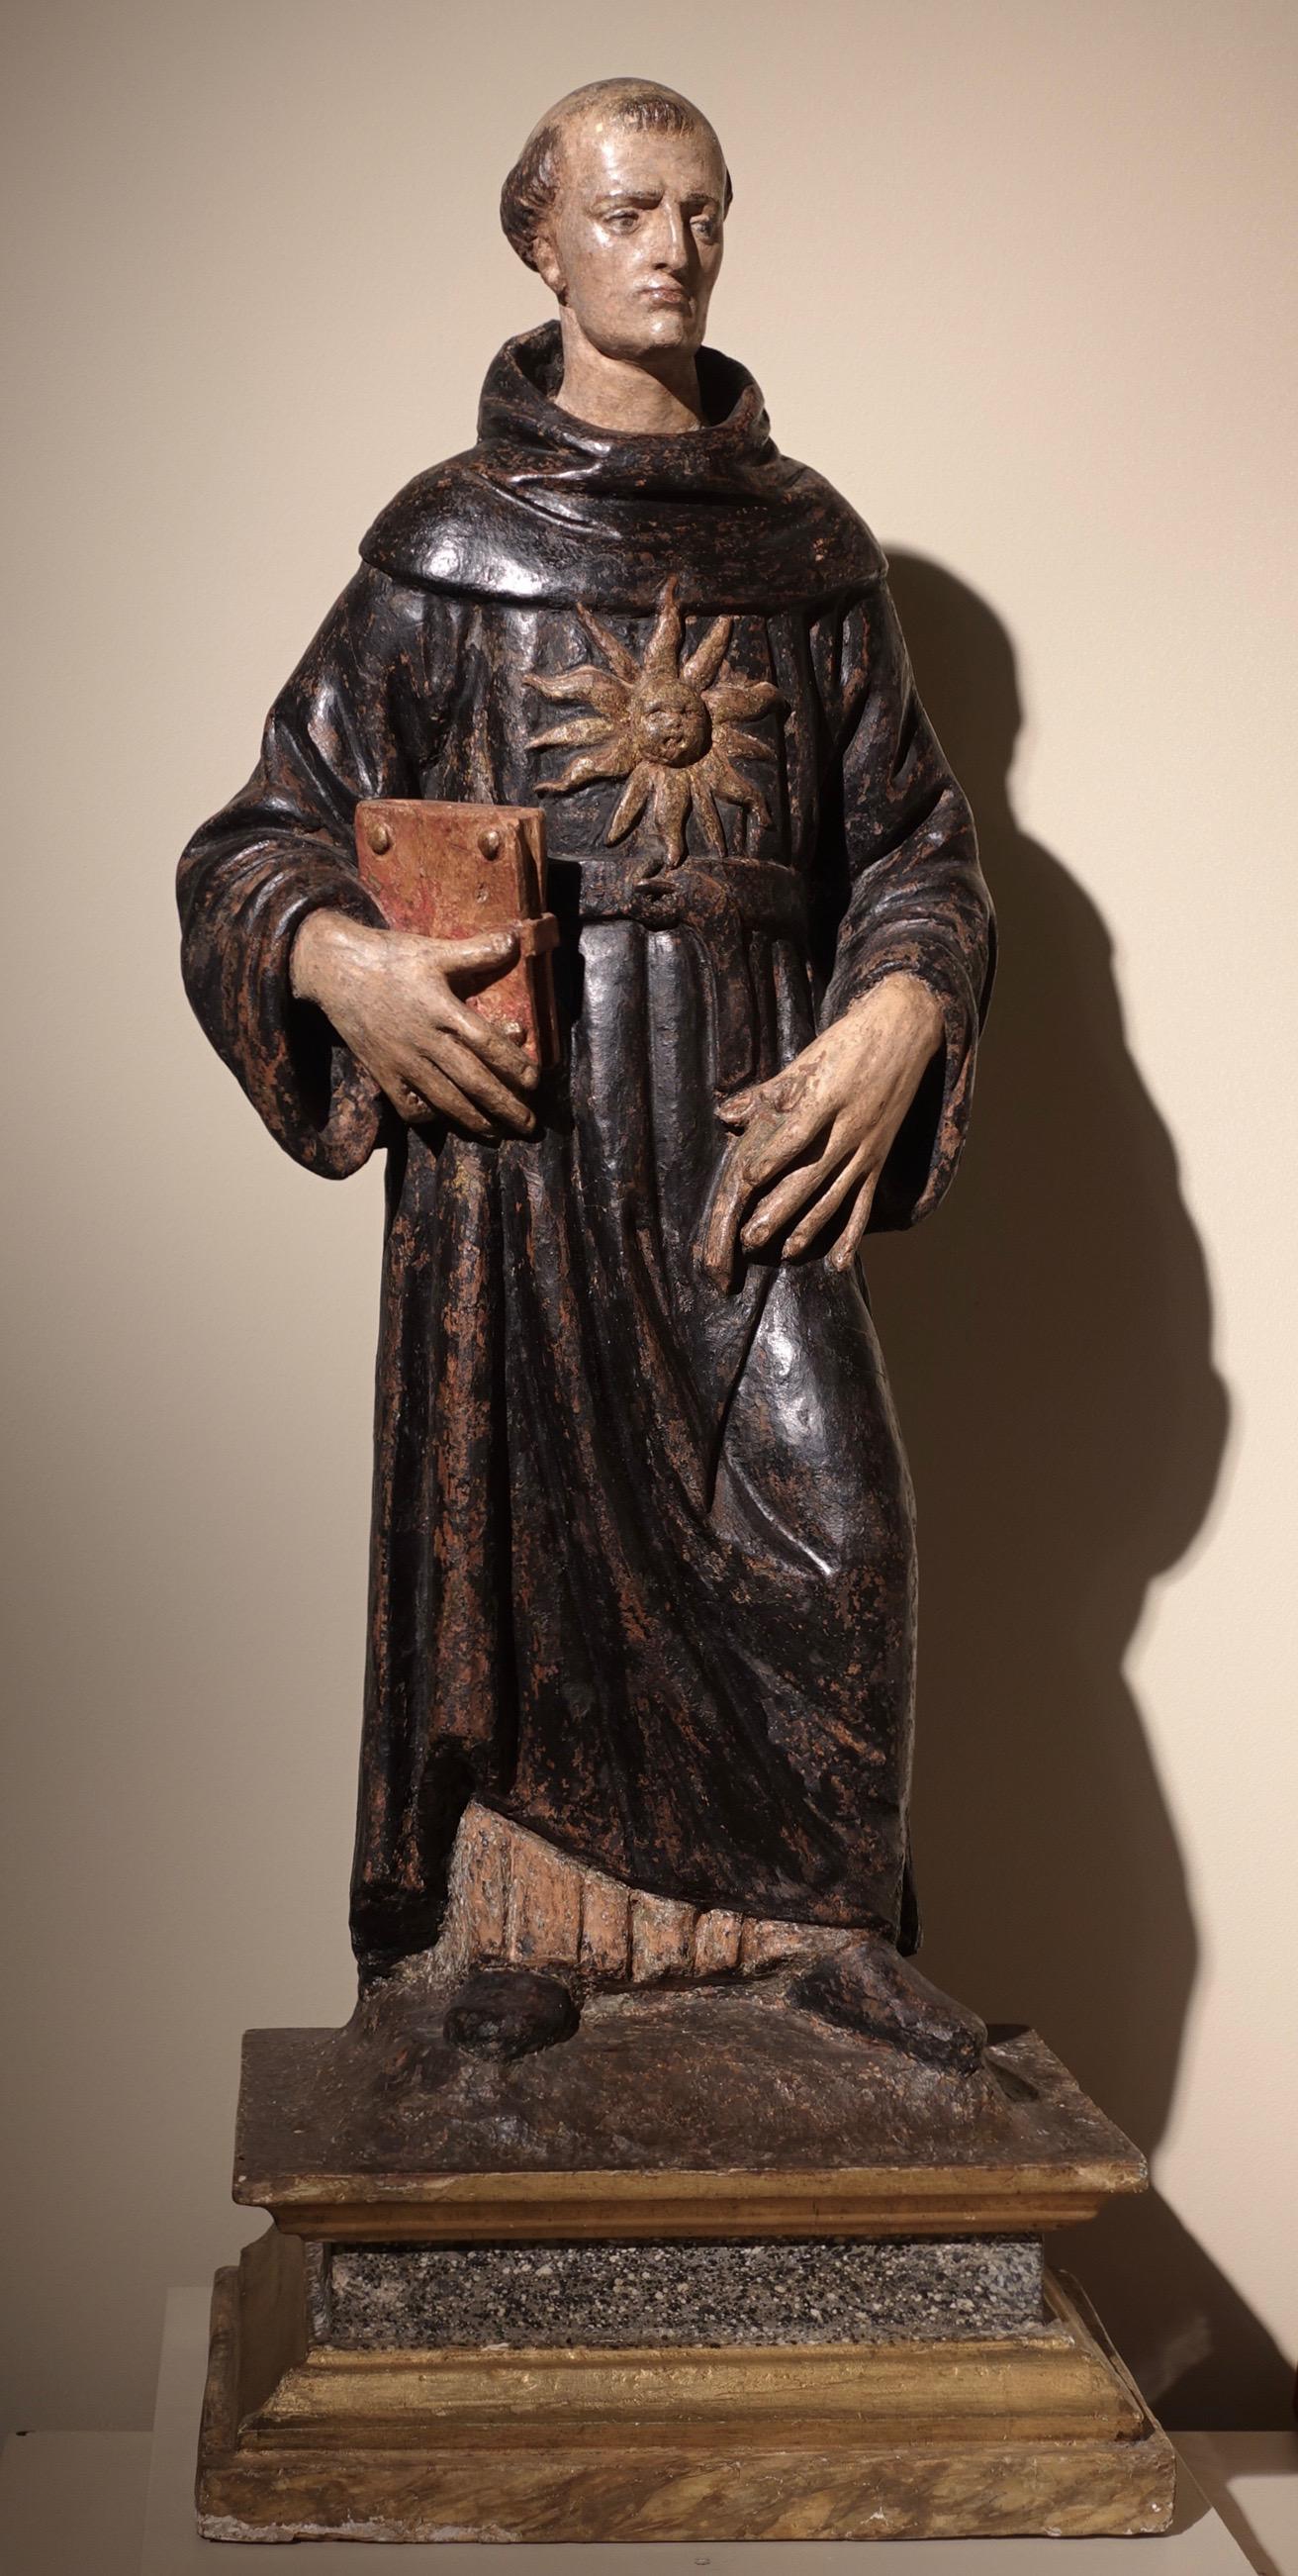 Agnolo di Polo (Florenz 1470 - Arezzo 1528)
Heiliger Nikolaus von Tolentino
Um 1510-1520
Bemalte und vergoldete Terrakotta
55,5 x 24 x 16,5 cm

Nikolaus von Tolentino ist mit der für die Einsiedler des Heiligen Augustinus typischen schwarzen Tunika